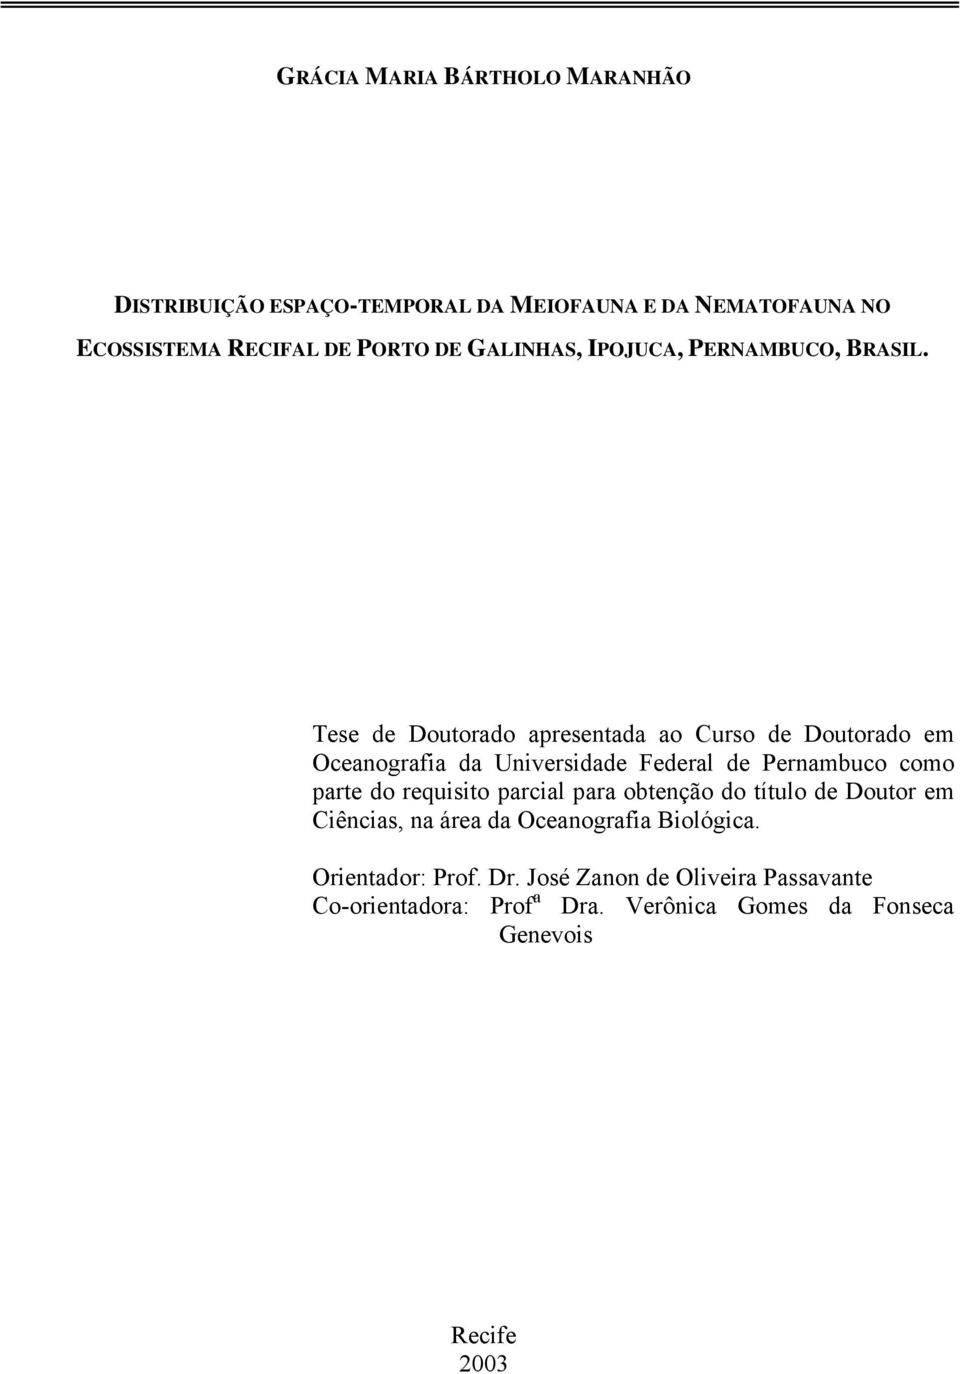 Tese de Doutorado apresentada ao Curso de Doutorado em Oceanografia da Universidade Federal de Pernambuco como parte do